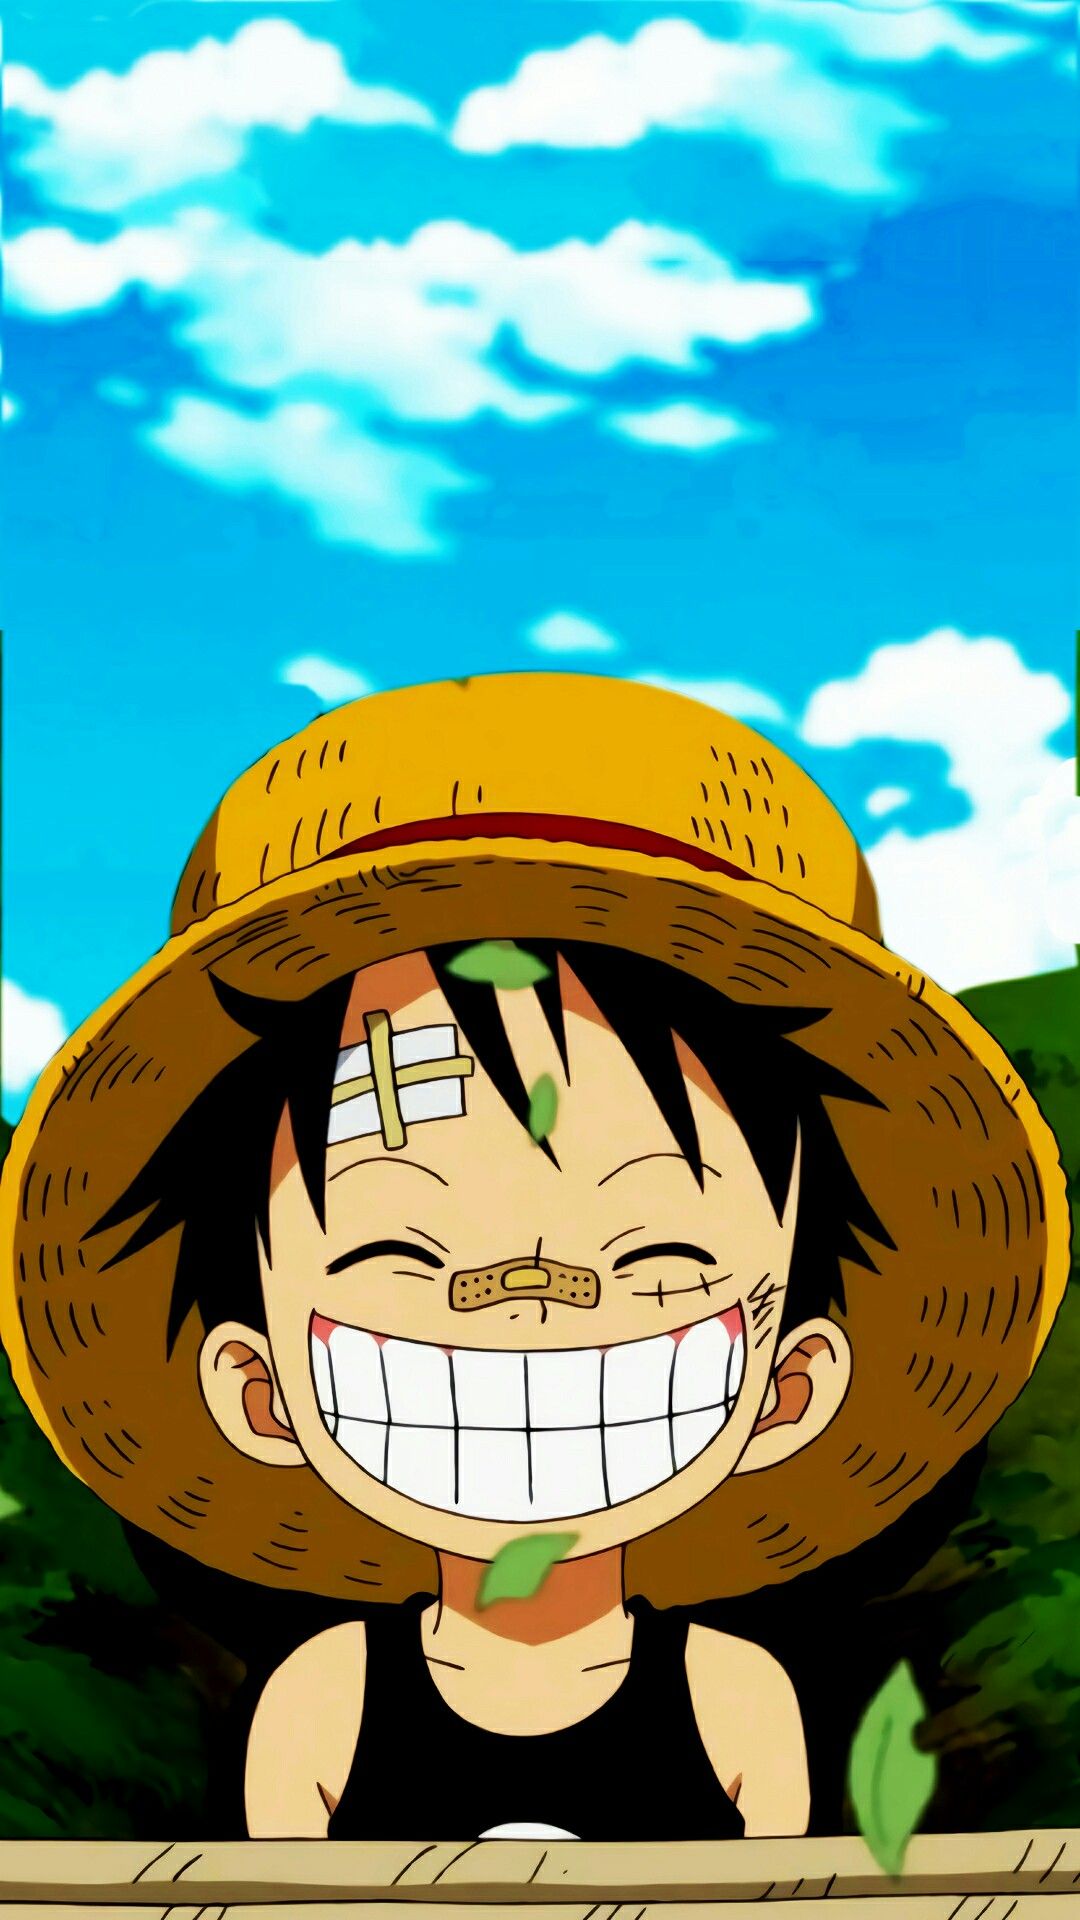 Hình ảnh One Piece tinh nghịch và đáng yêu nhất dành cho fan hải tặc